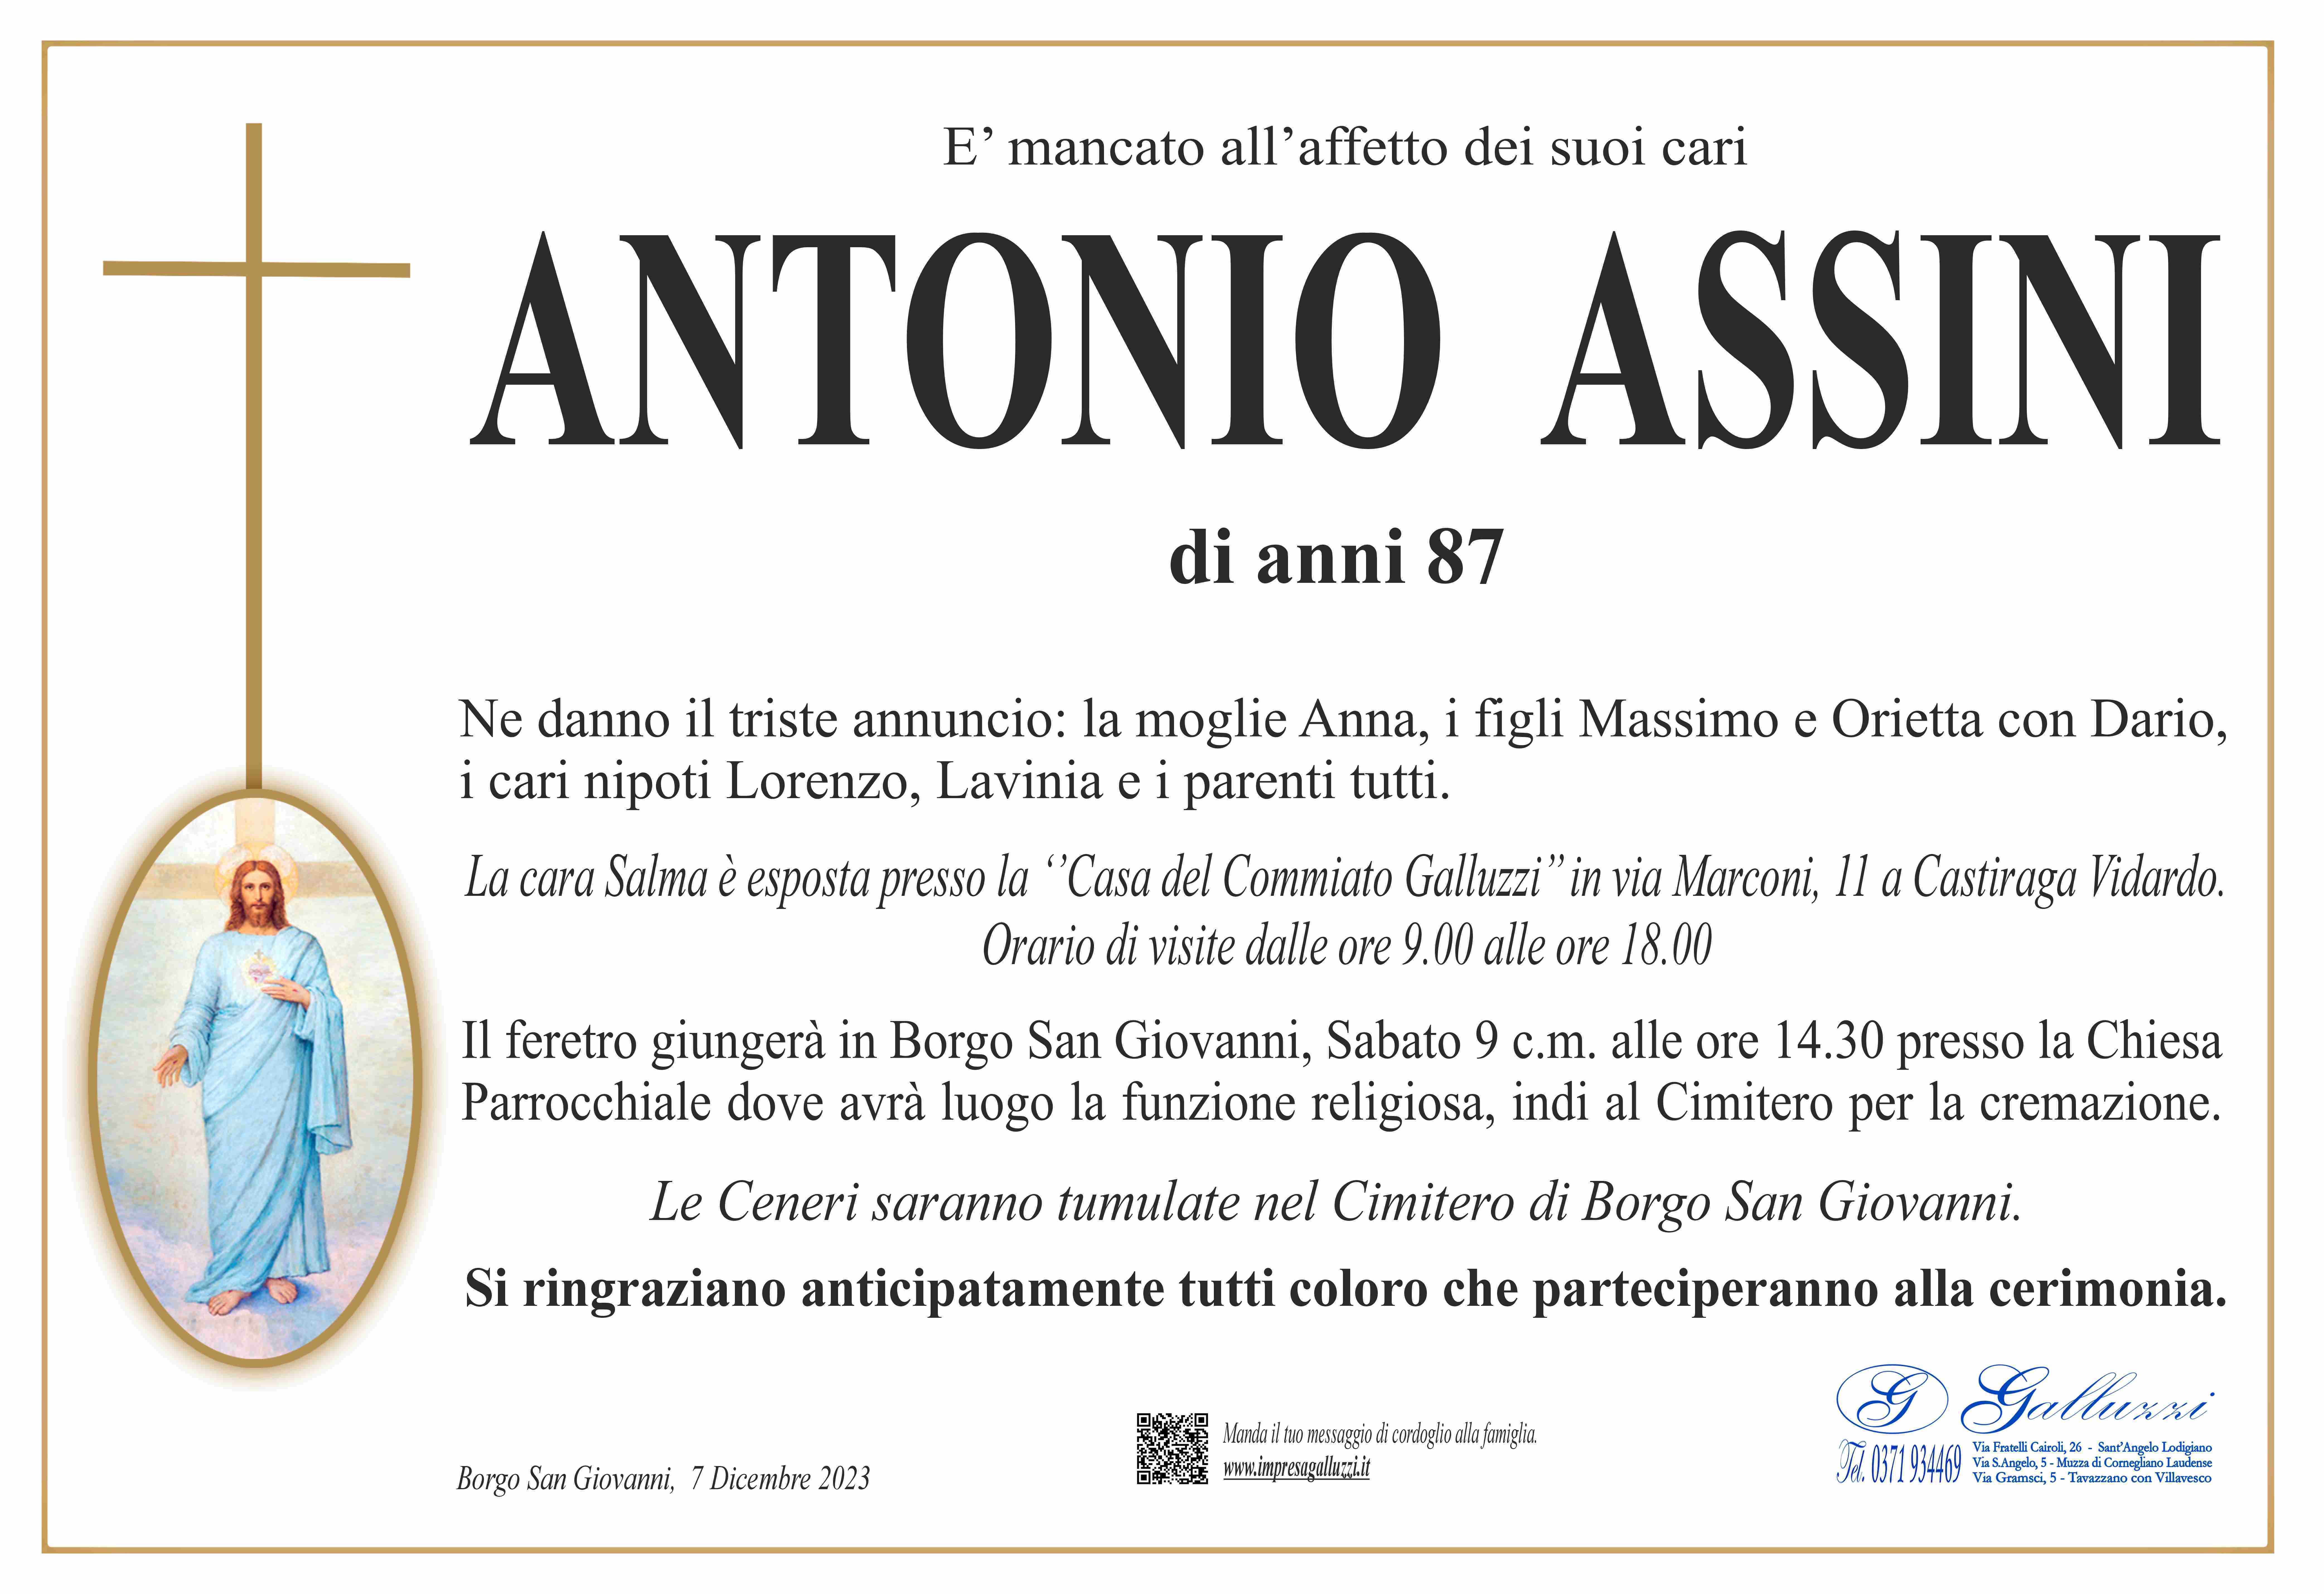 Antonio Assini